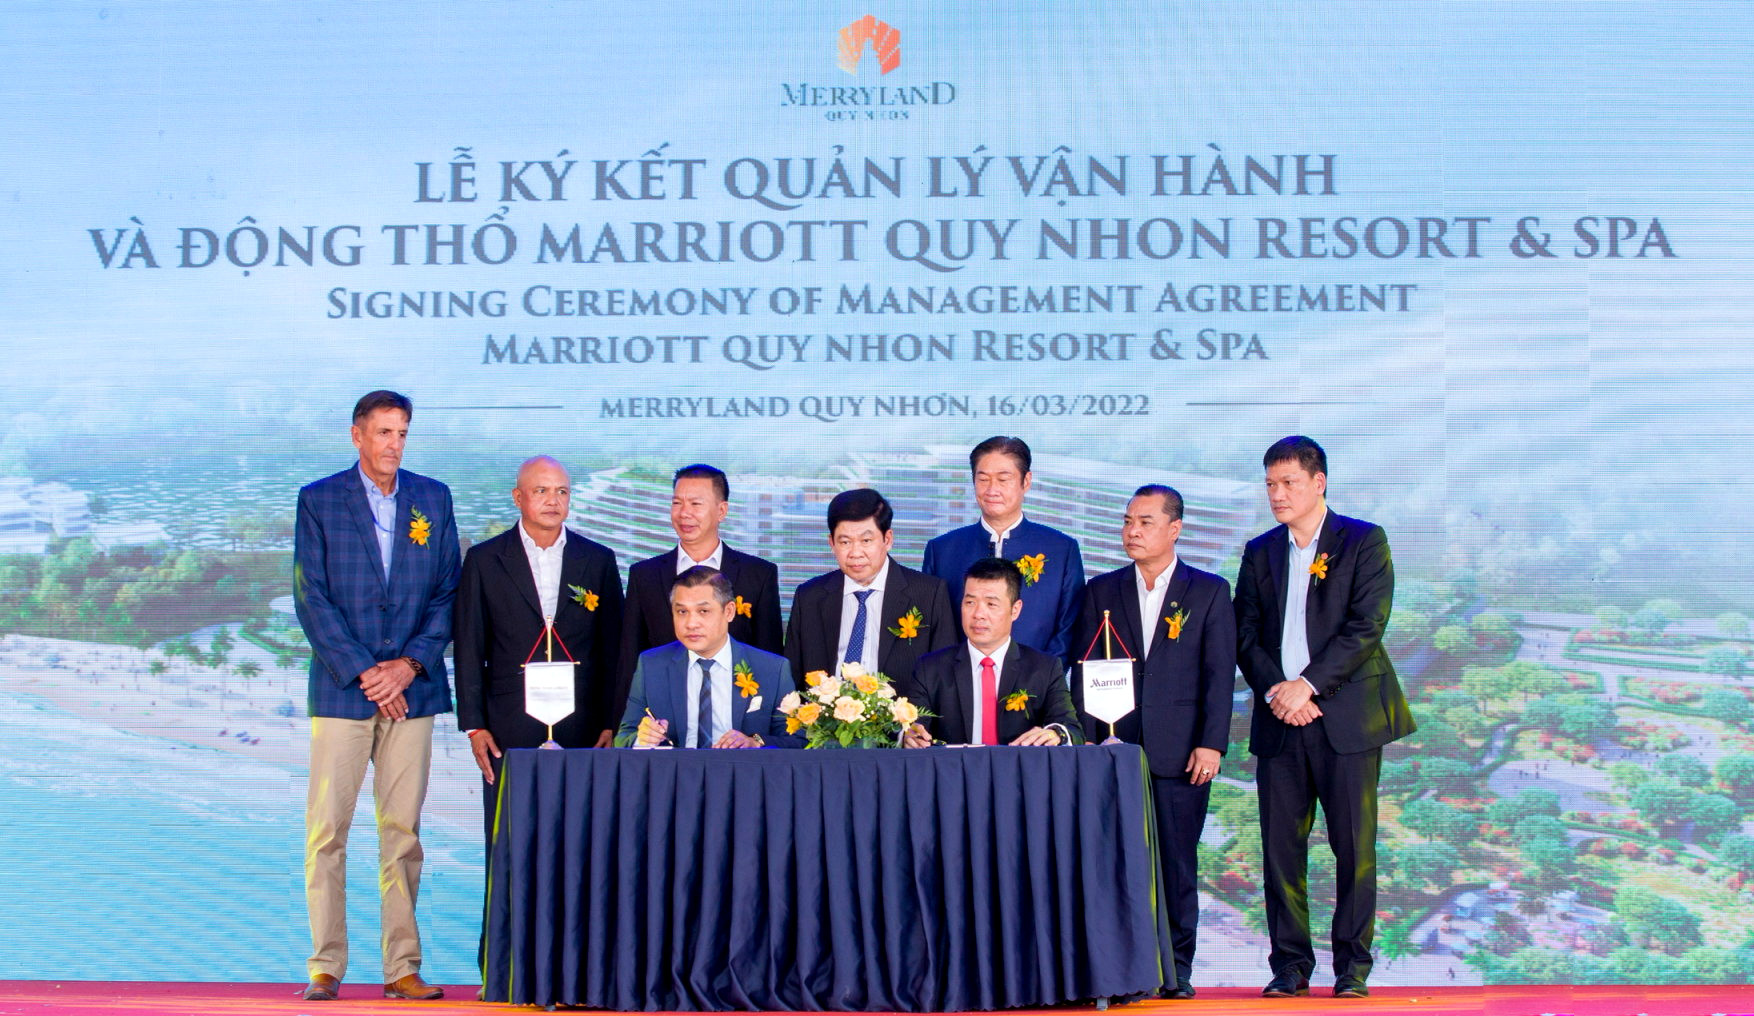 Tập đoàn Hưng Thịnh ký kết hợp tác và động thổ khách sạn 5 sao Marriott QuyNhon Resort & Spa tại MerryLand Quy Nhơn